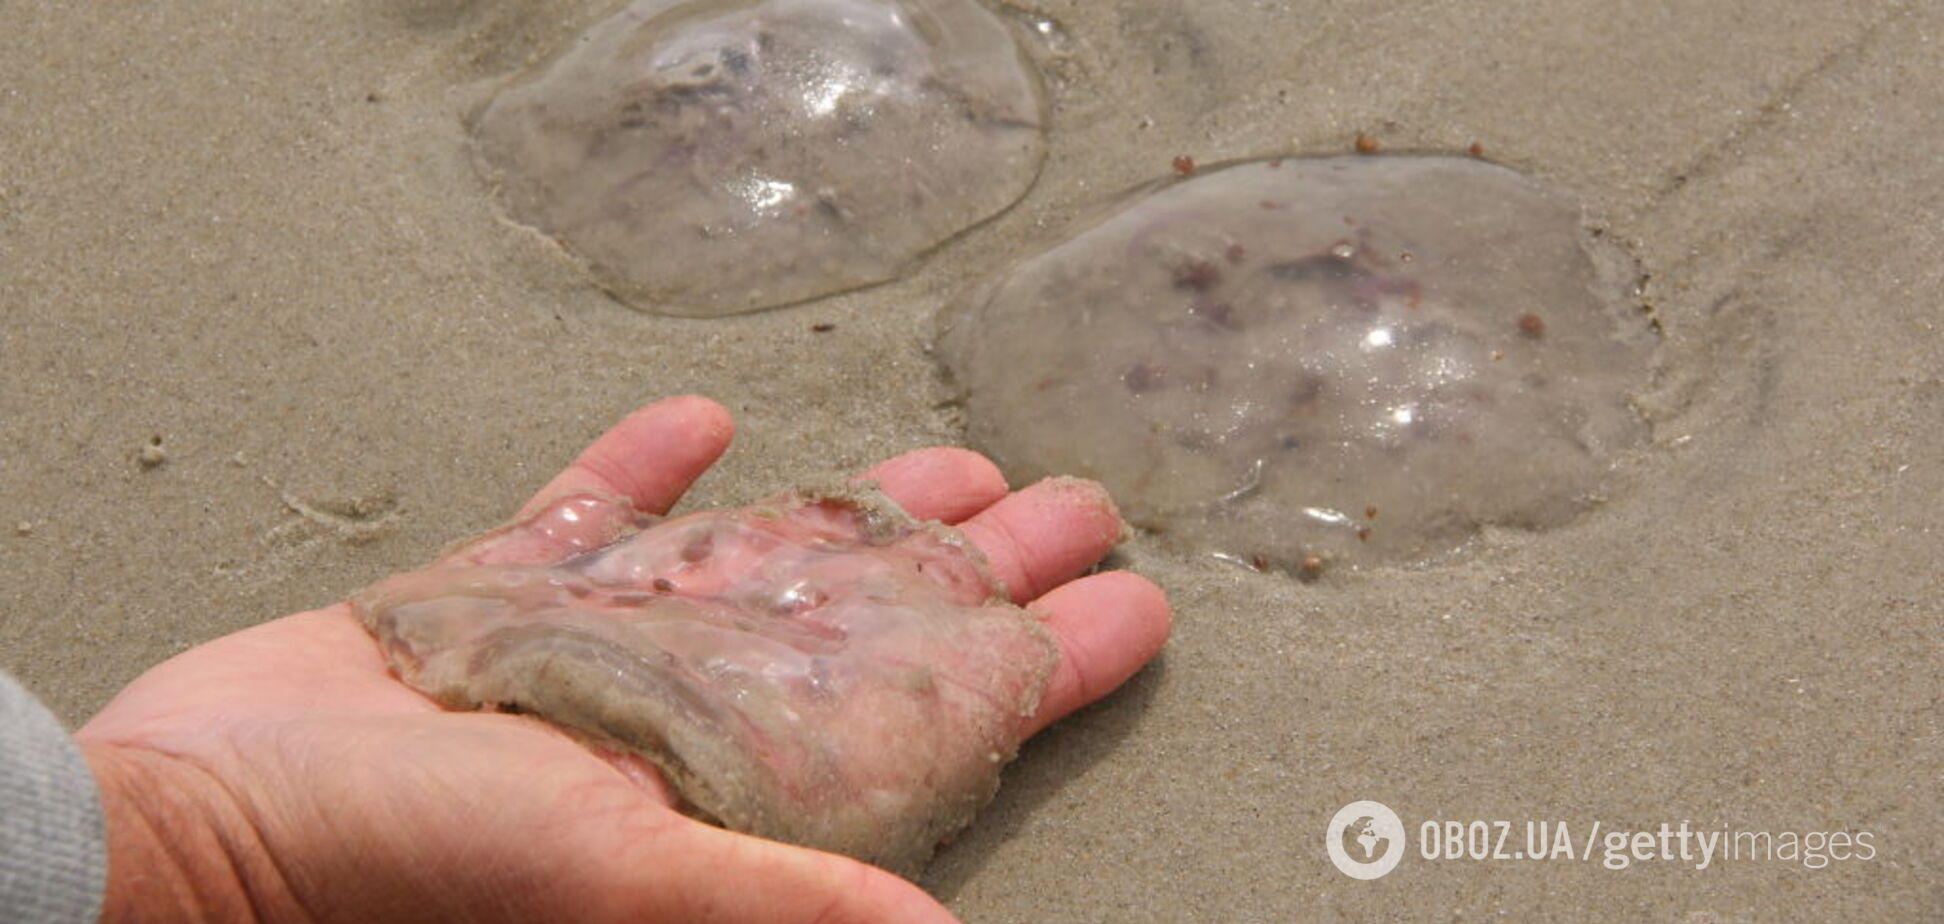 Пляжи в Кирилловке заполнили медузы: жалят прямо в лицо. Видео